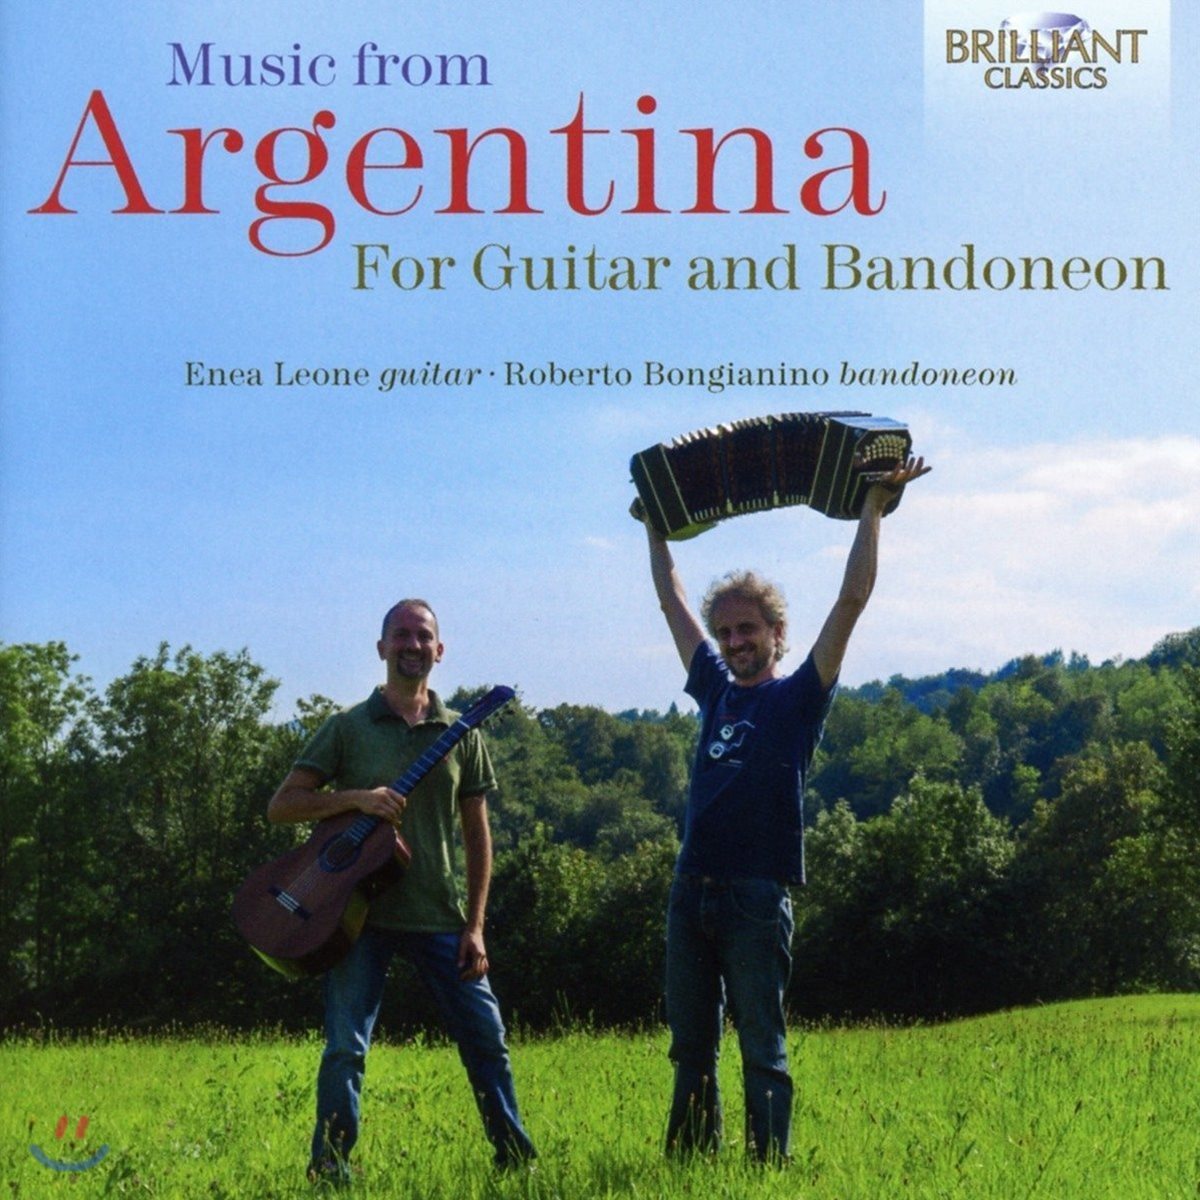 Enea Leone / Roberto Bongianino 기타와 반도네온을 위한 아르헨티나 음악 - 에네아 레오네, 로베르토 본지아니노 (Music from Argentina for Guitar and Bandoneon)